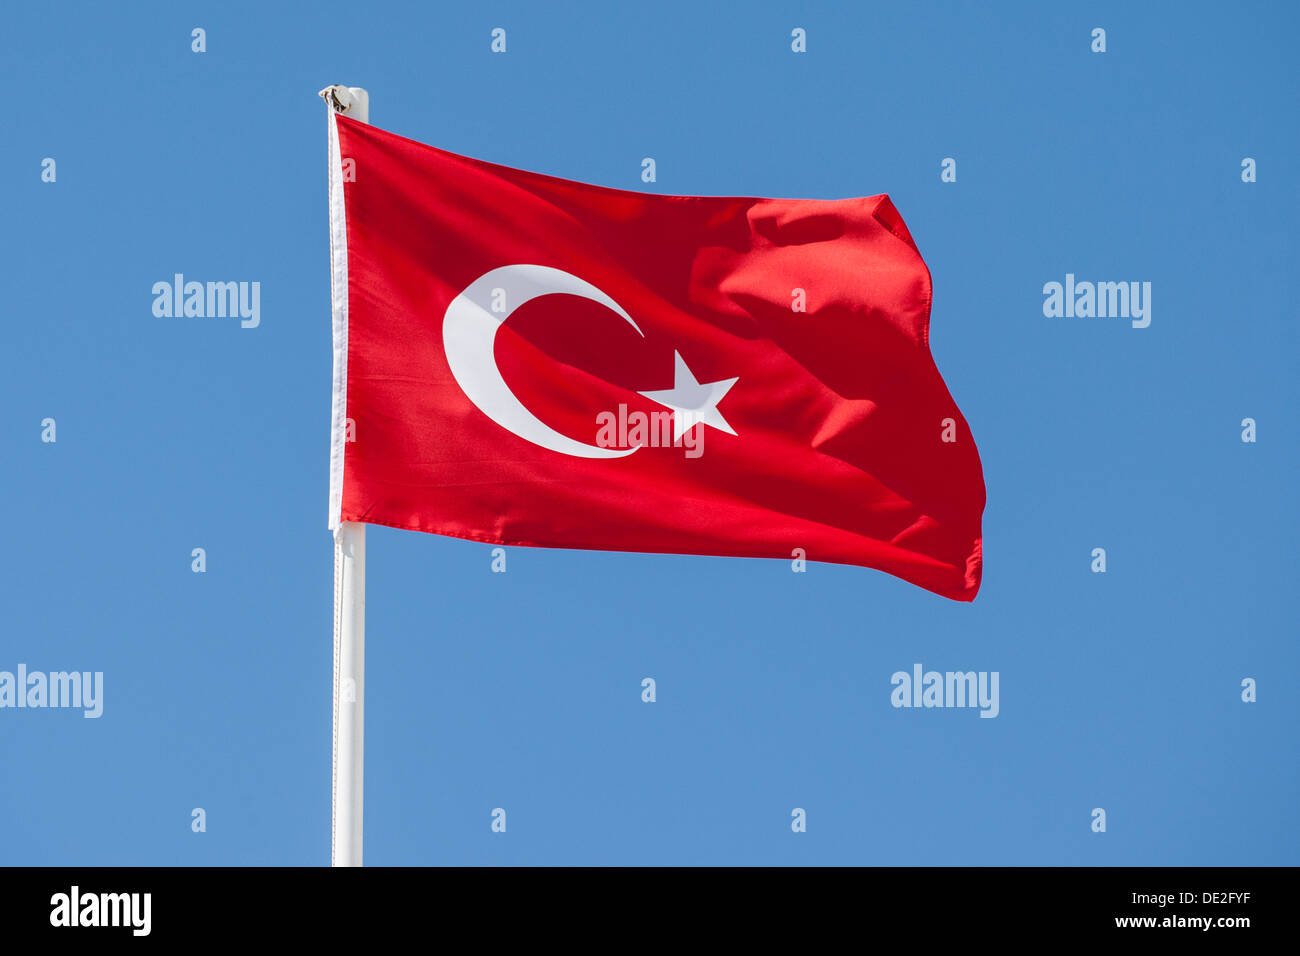 Flag of Turkey against a blue sky Stock Photo